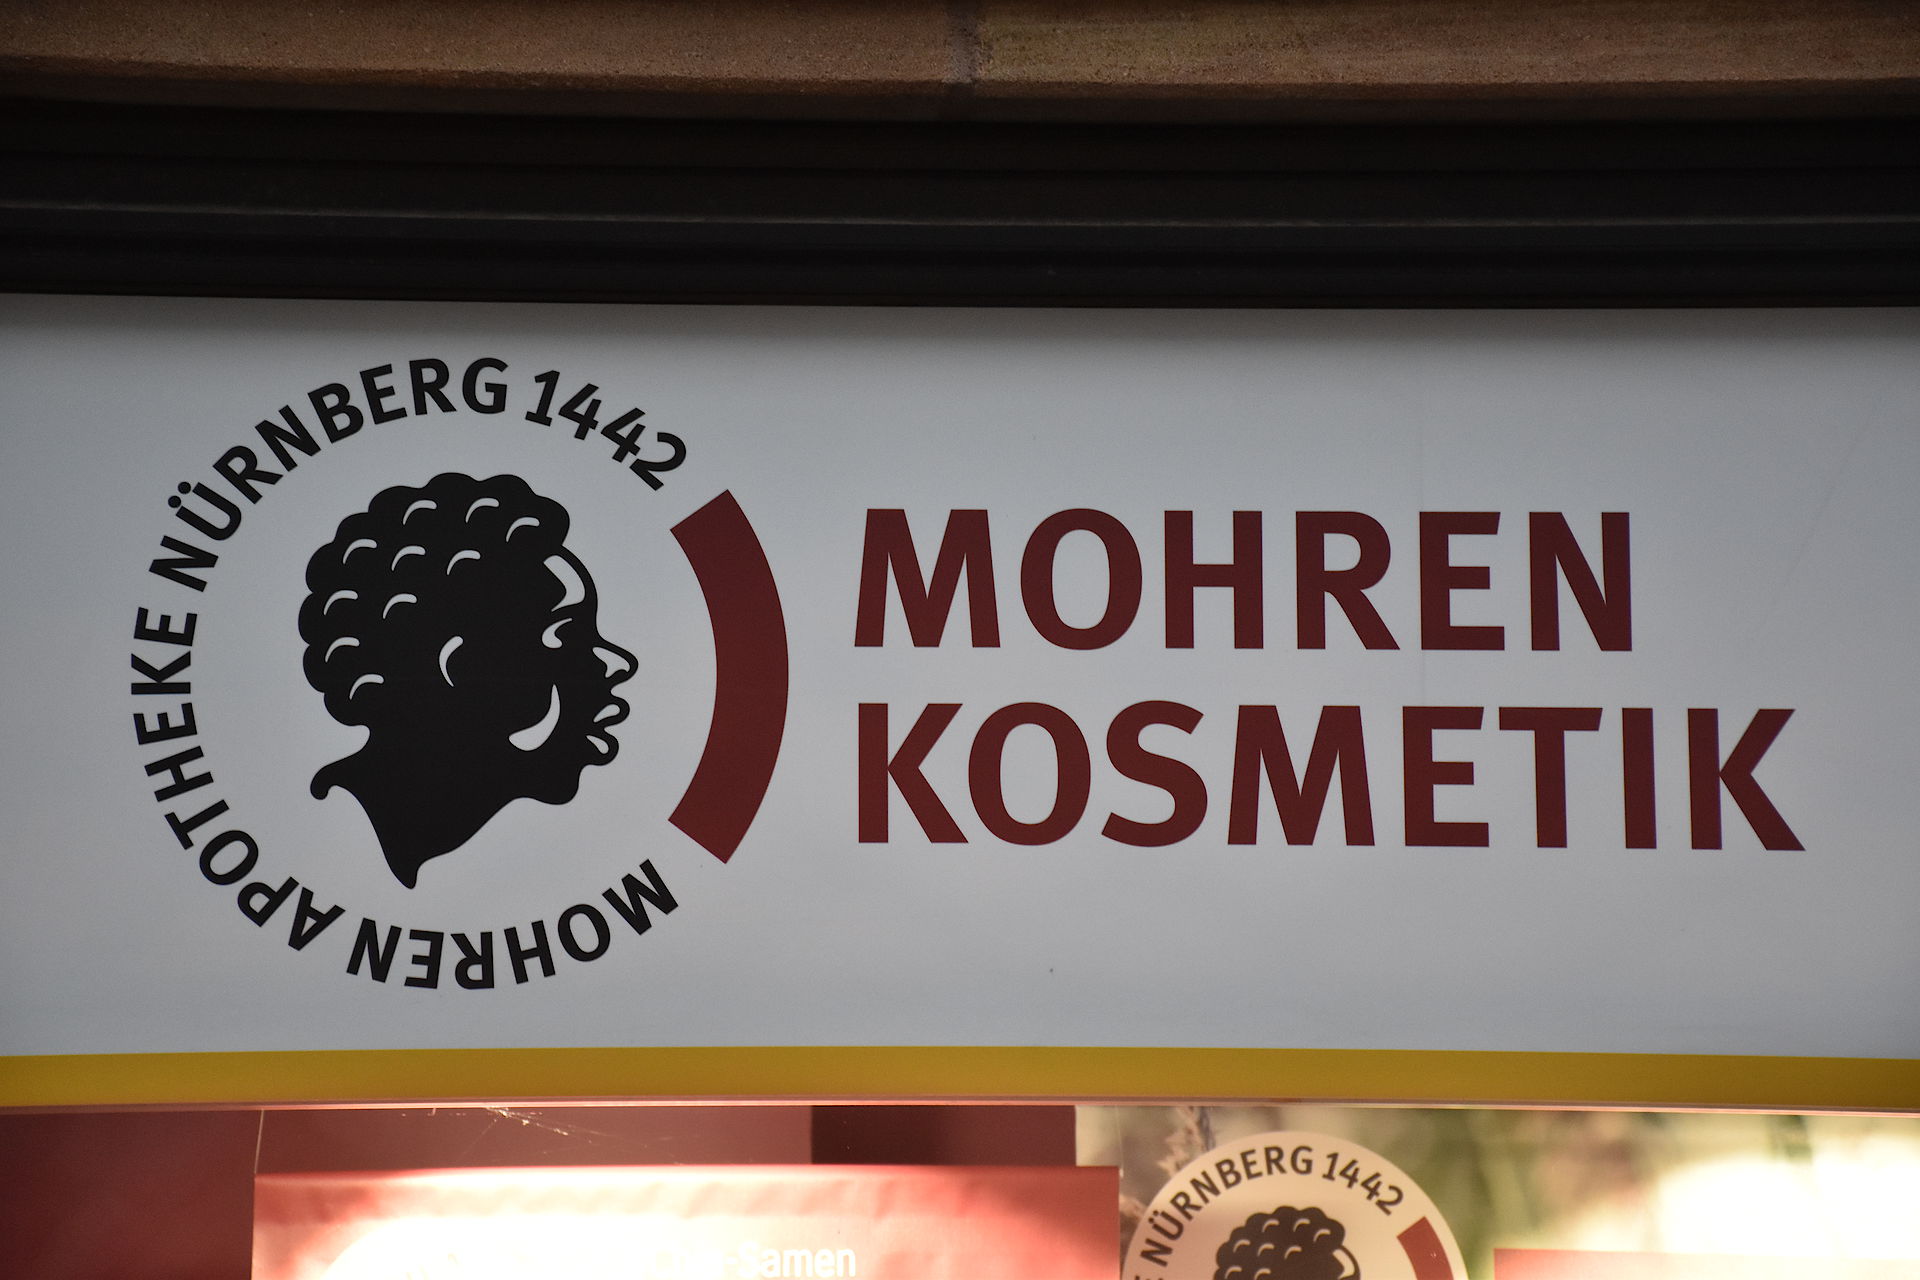 Mohren pharmacy